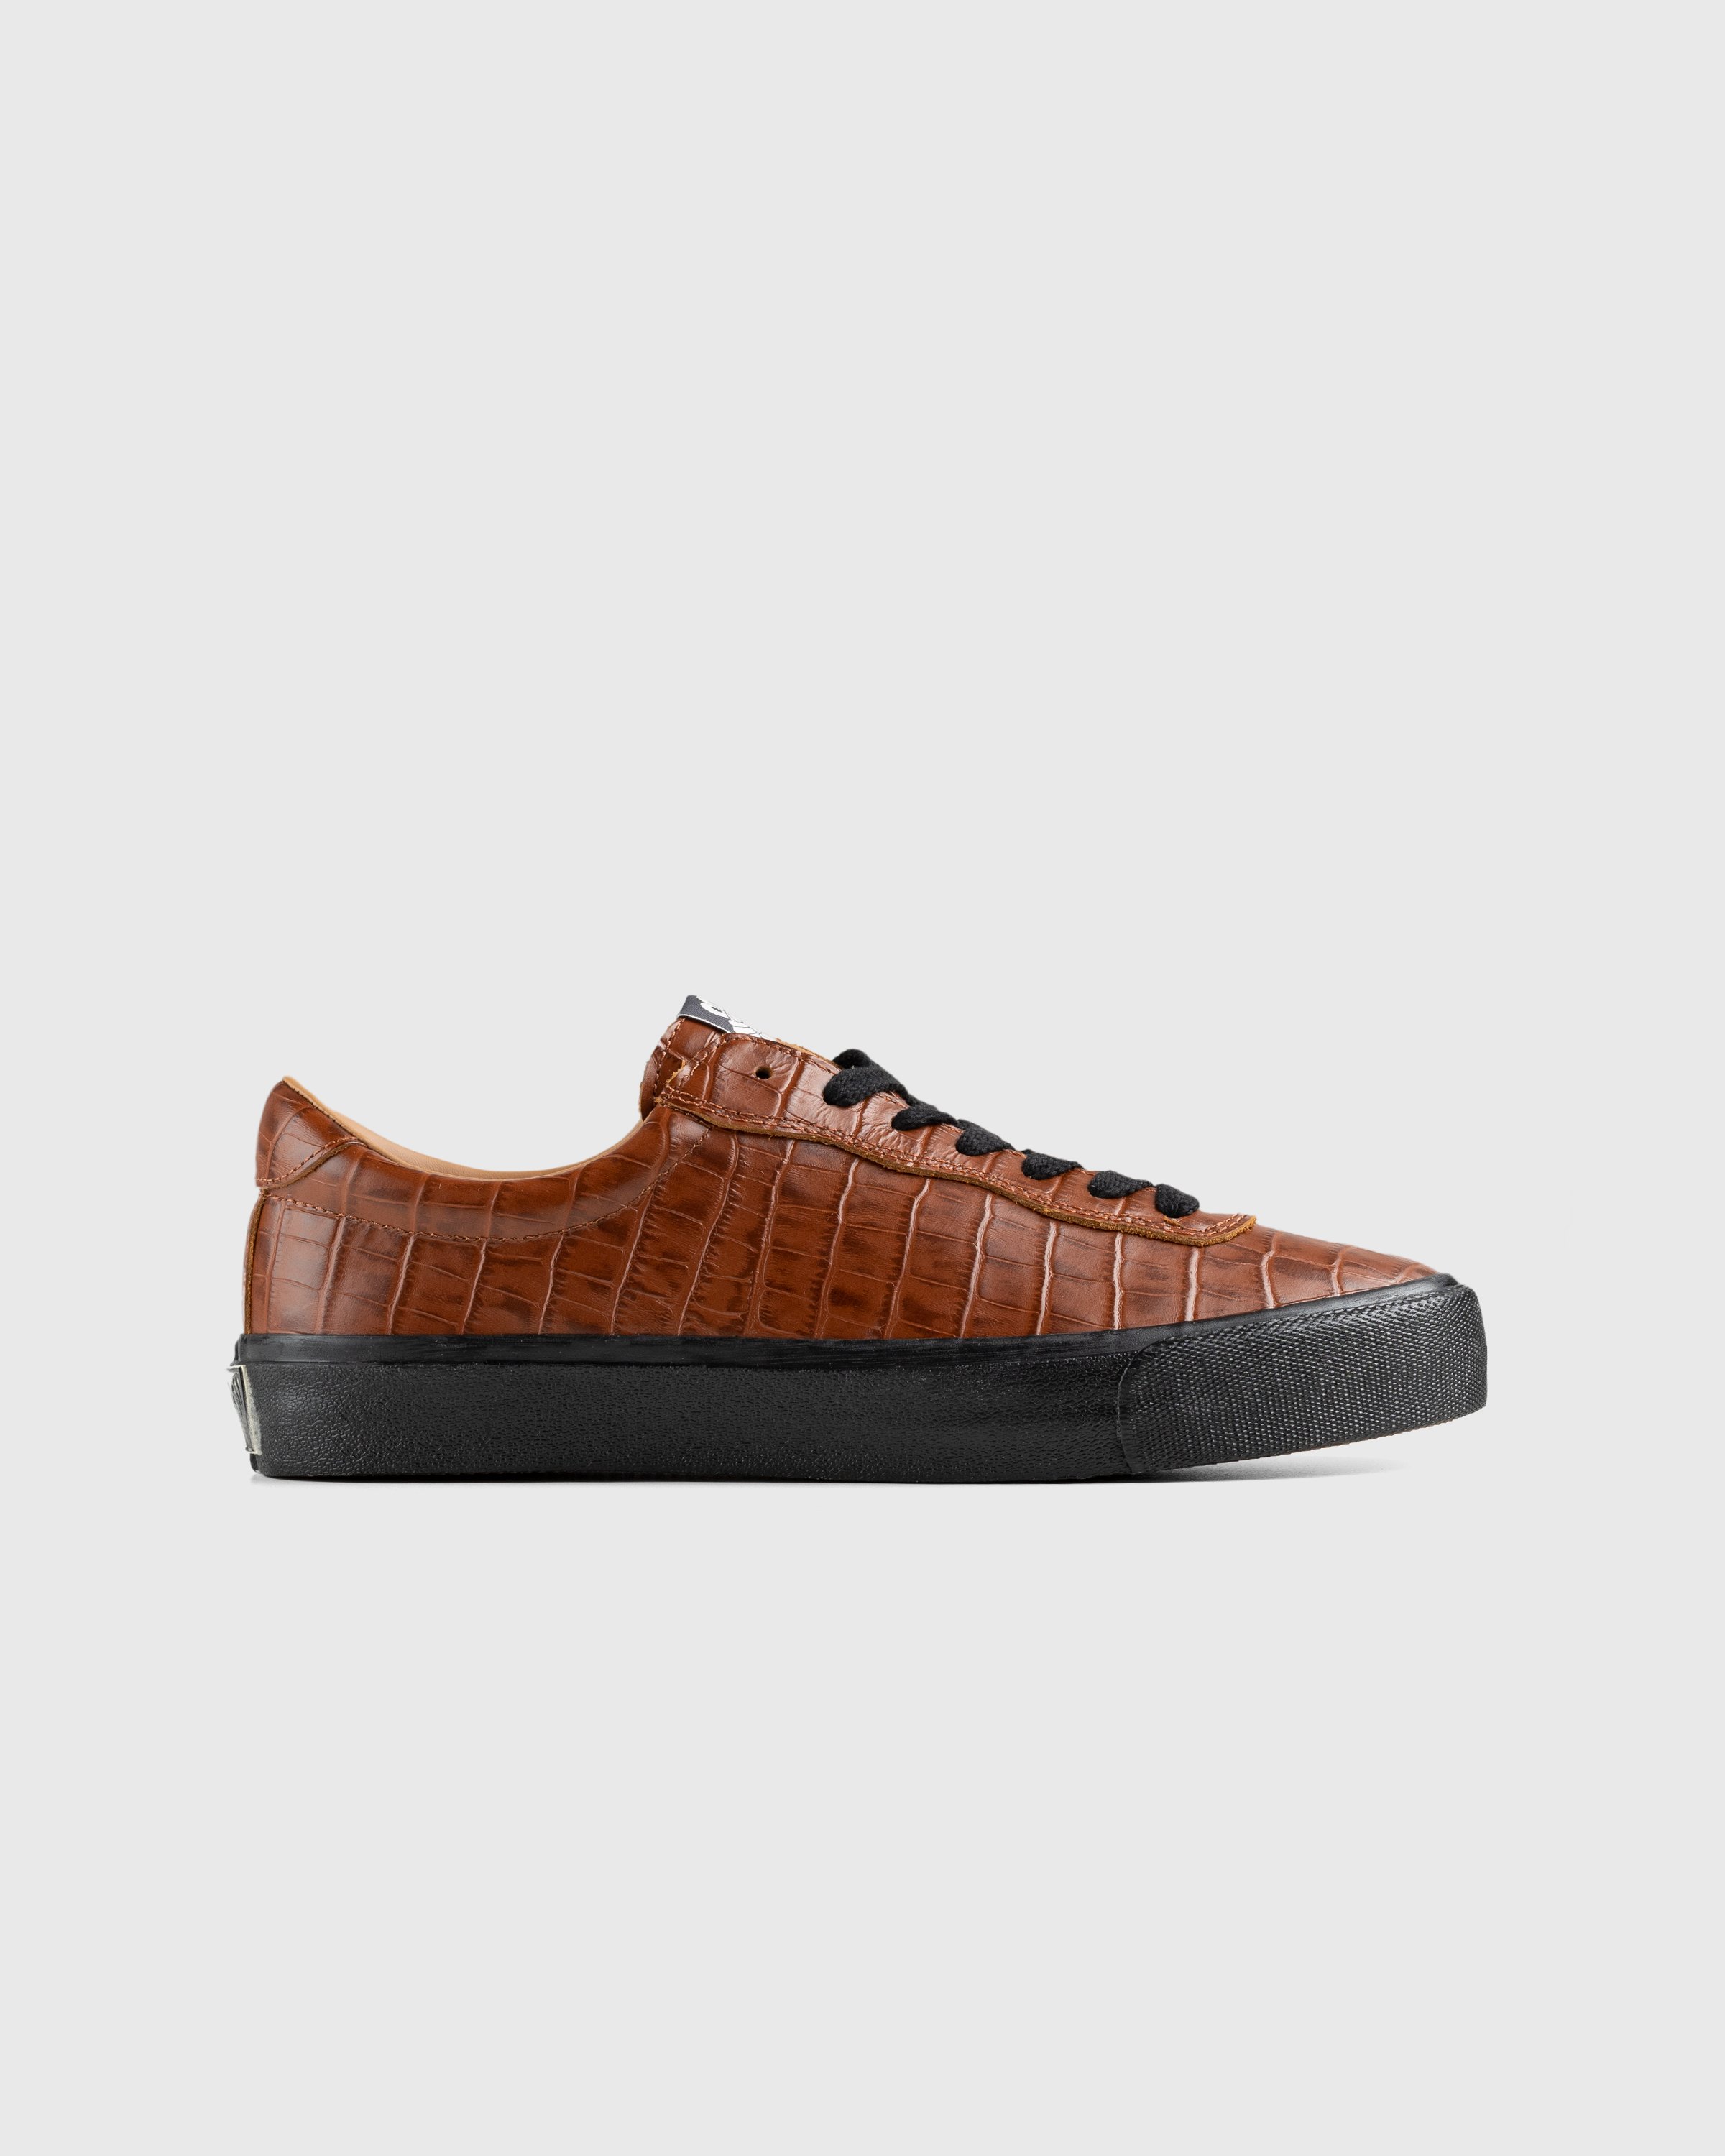 Last Resort AB - VM001 Croc Lo Brown/Black - Footwear - Brown - Image 1